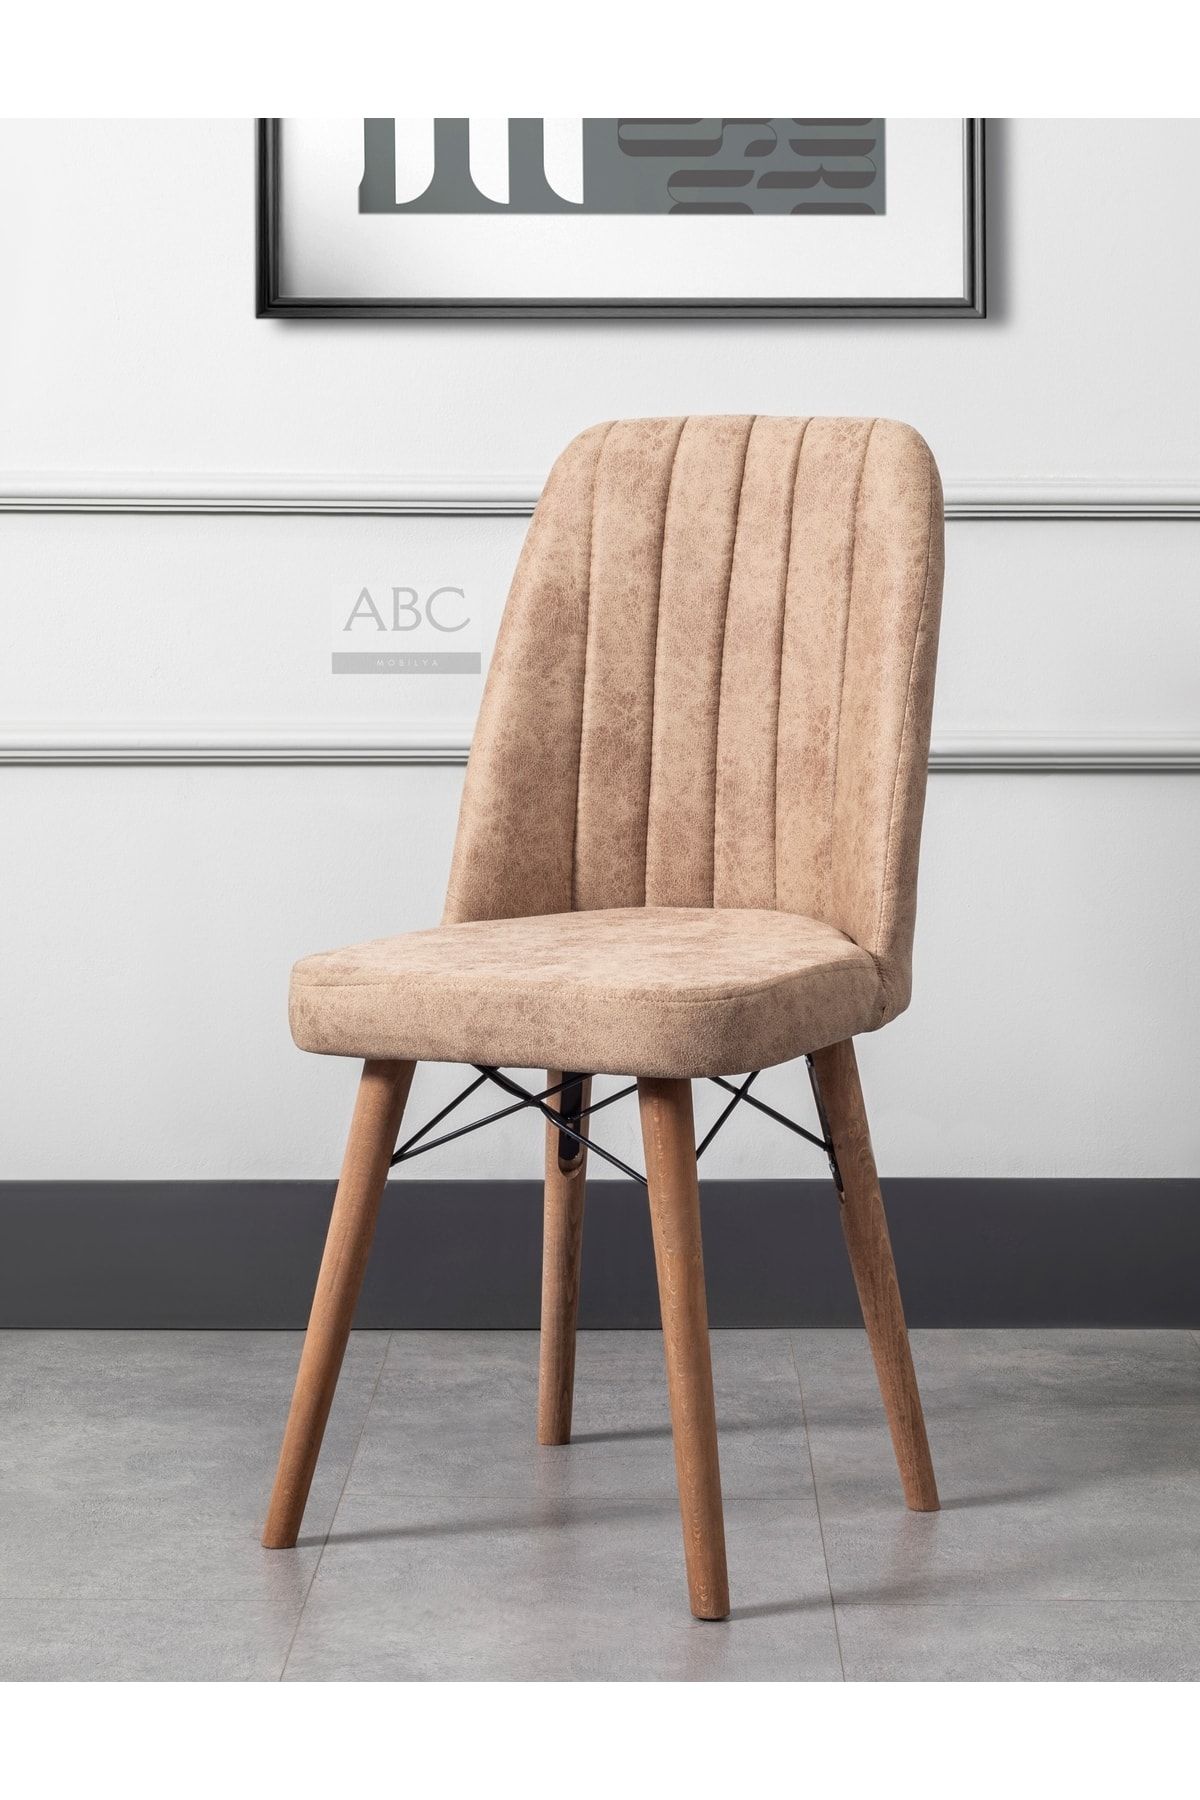 ABC Concept Paris Serisi Gürgen Ayaklı A+ Kalite Kare Gold Sandalye 7 Farklı Renk Seçeneği Ile